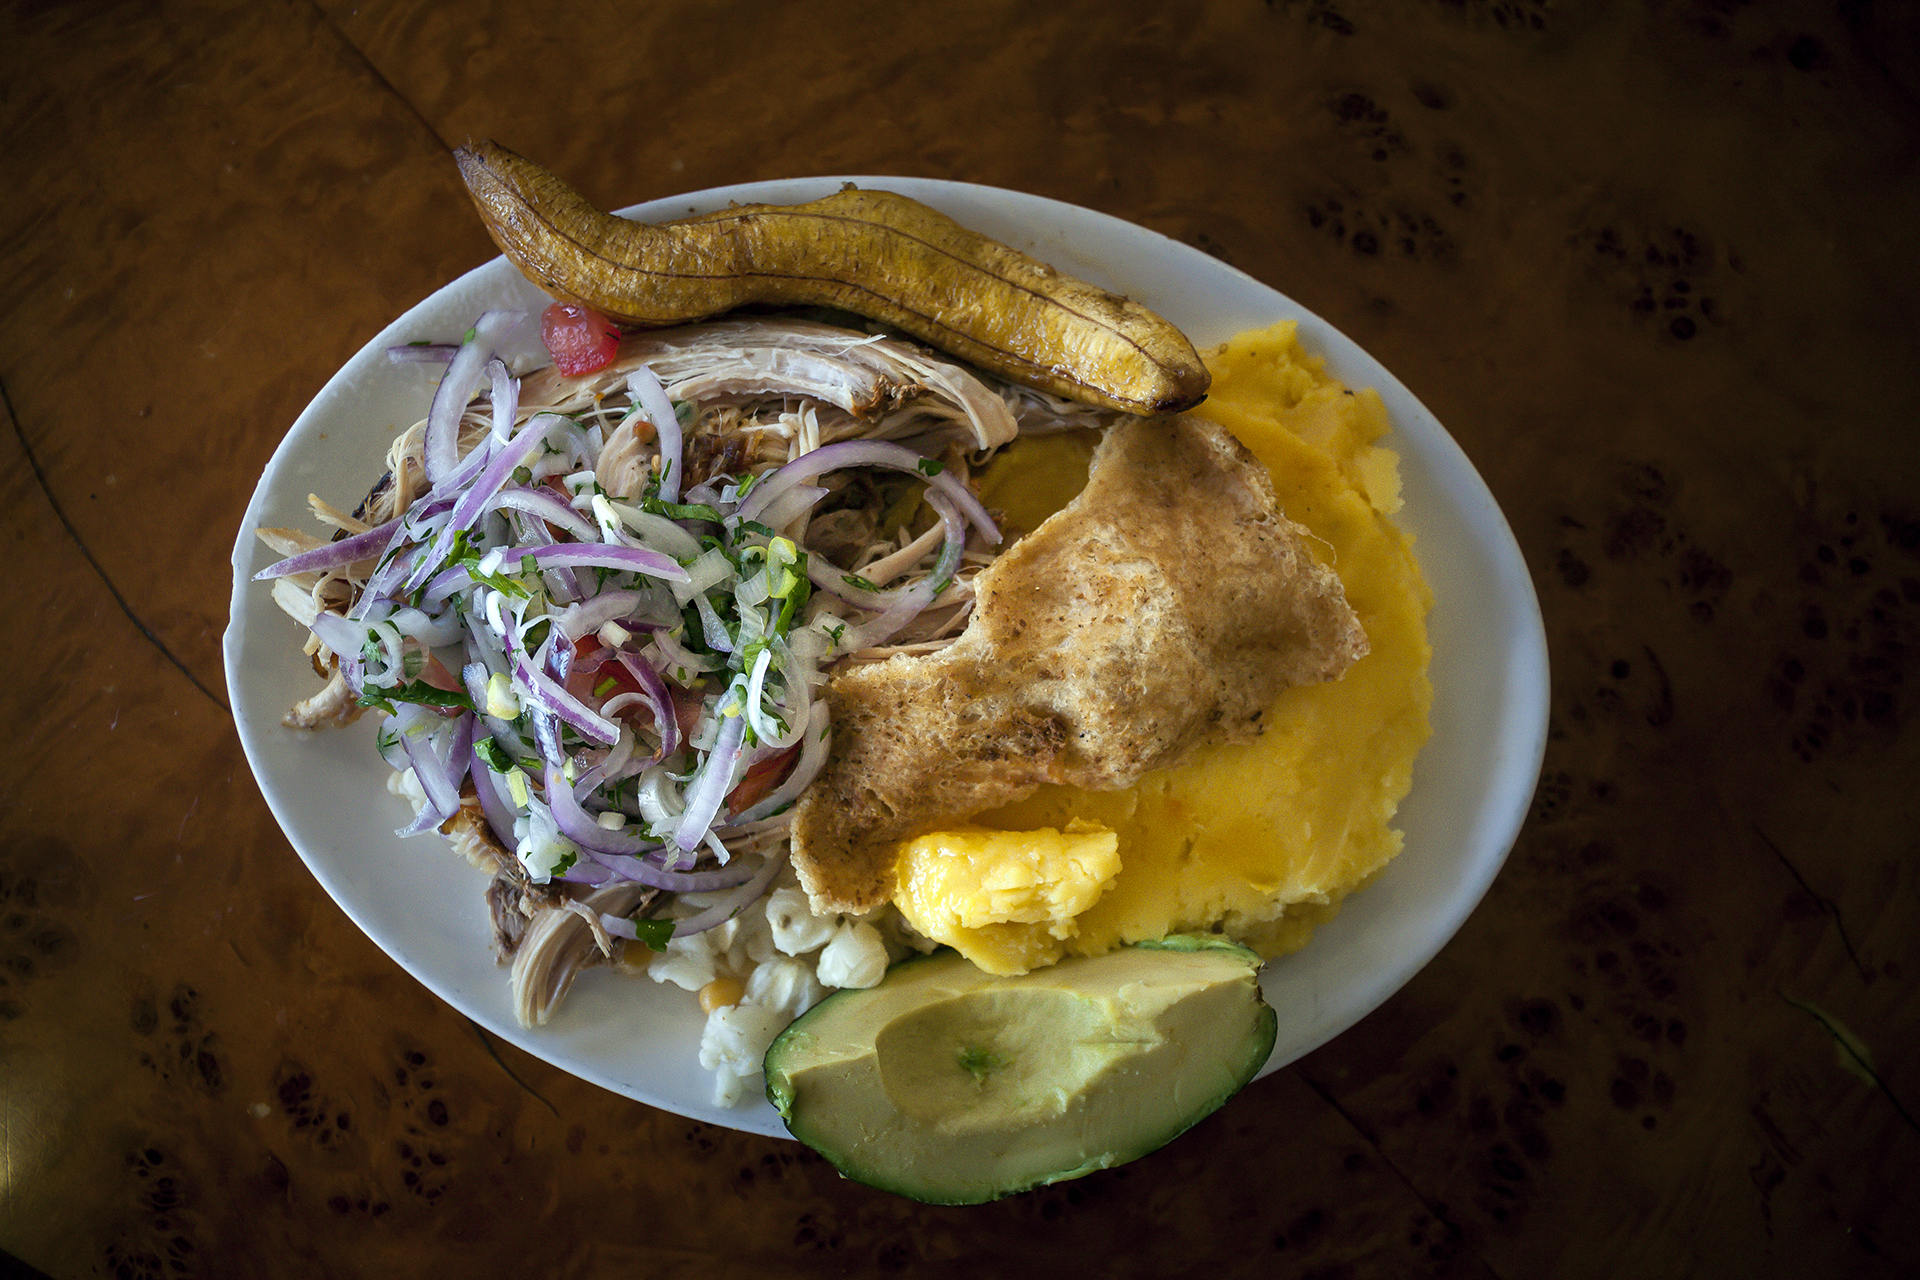 Uno de los platos tradicionales y preferidos de los quiteños para el festival gastronómico Quito, es la hornado con tortillas o llapingachos, mote y aguacate.